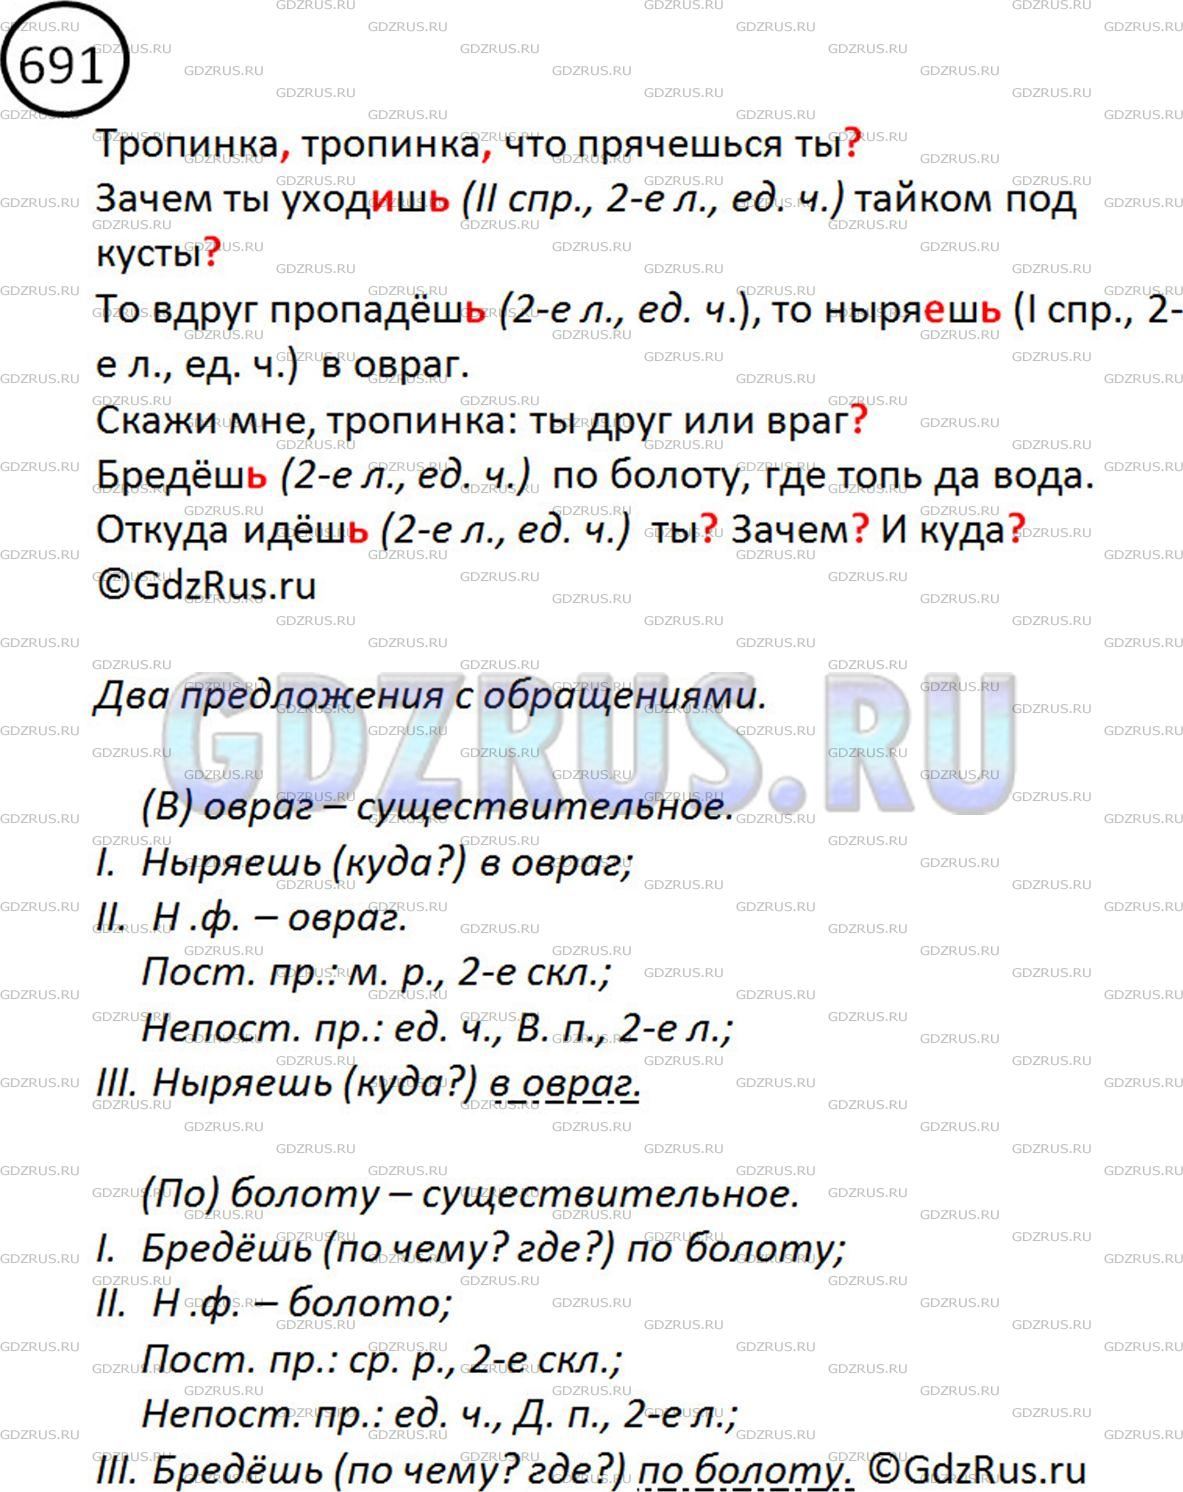 Фото решения 2: ГДЗ по Русскому языку 5 класса: Ладыженская Упр. 691